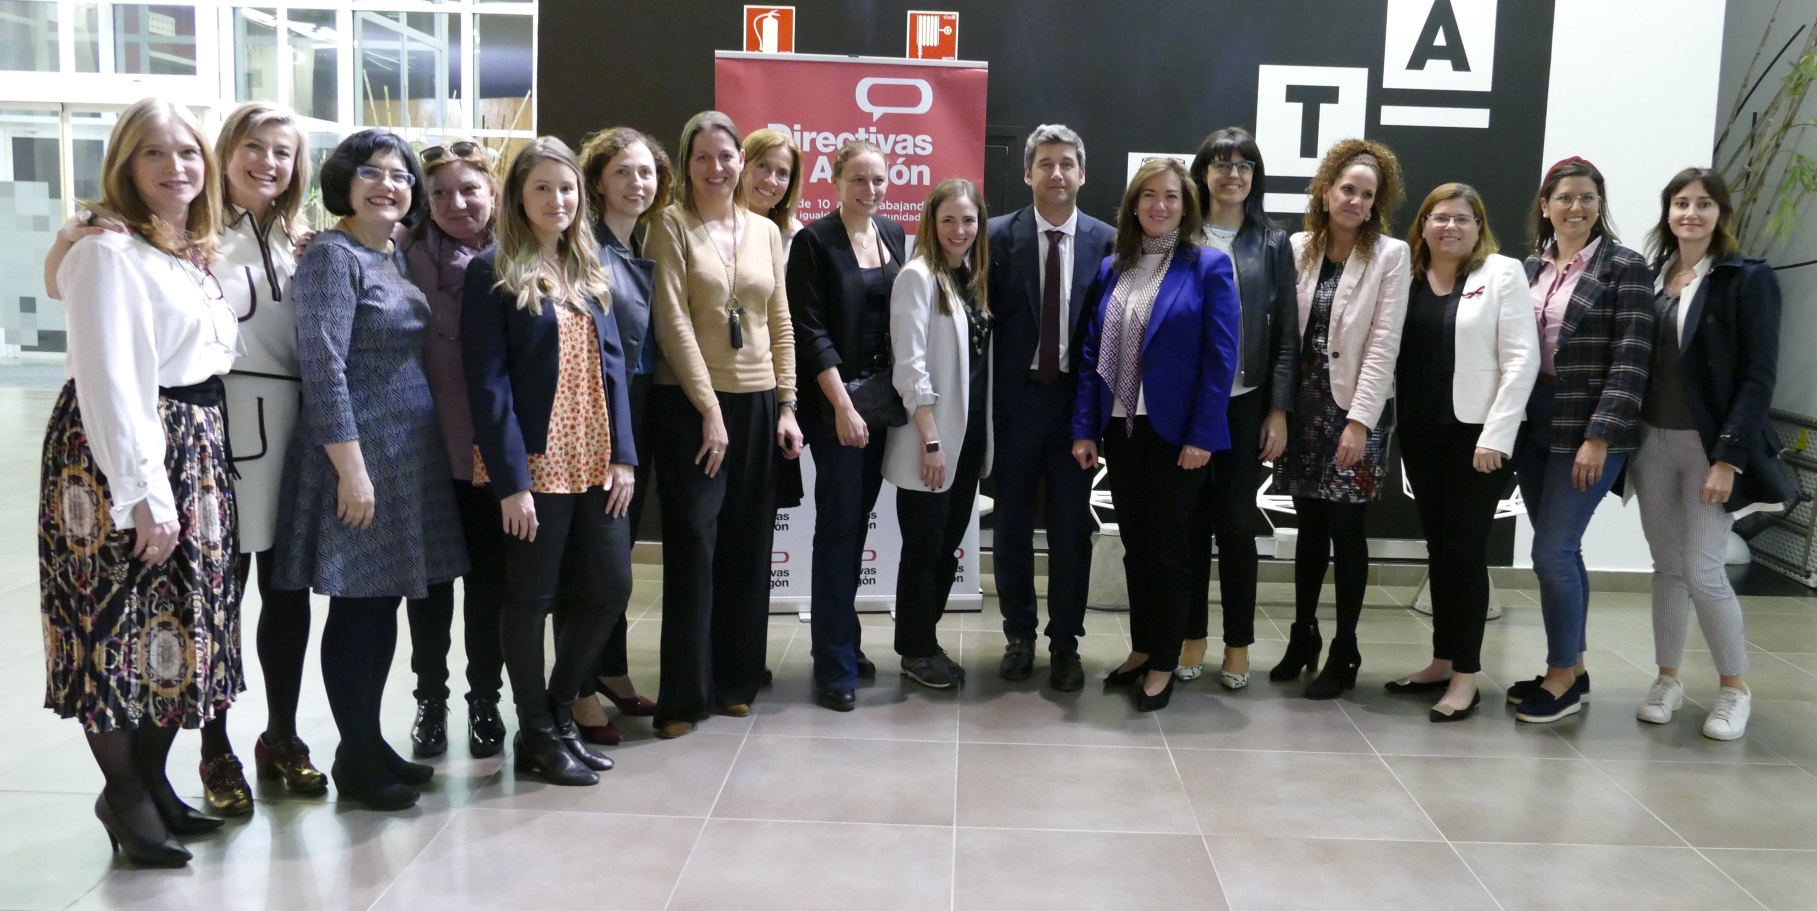 Directivas de Aragón celebra en ITAINNOVA un foro de innovación para jóvenes